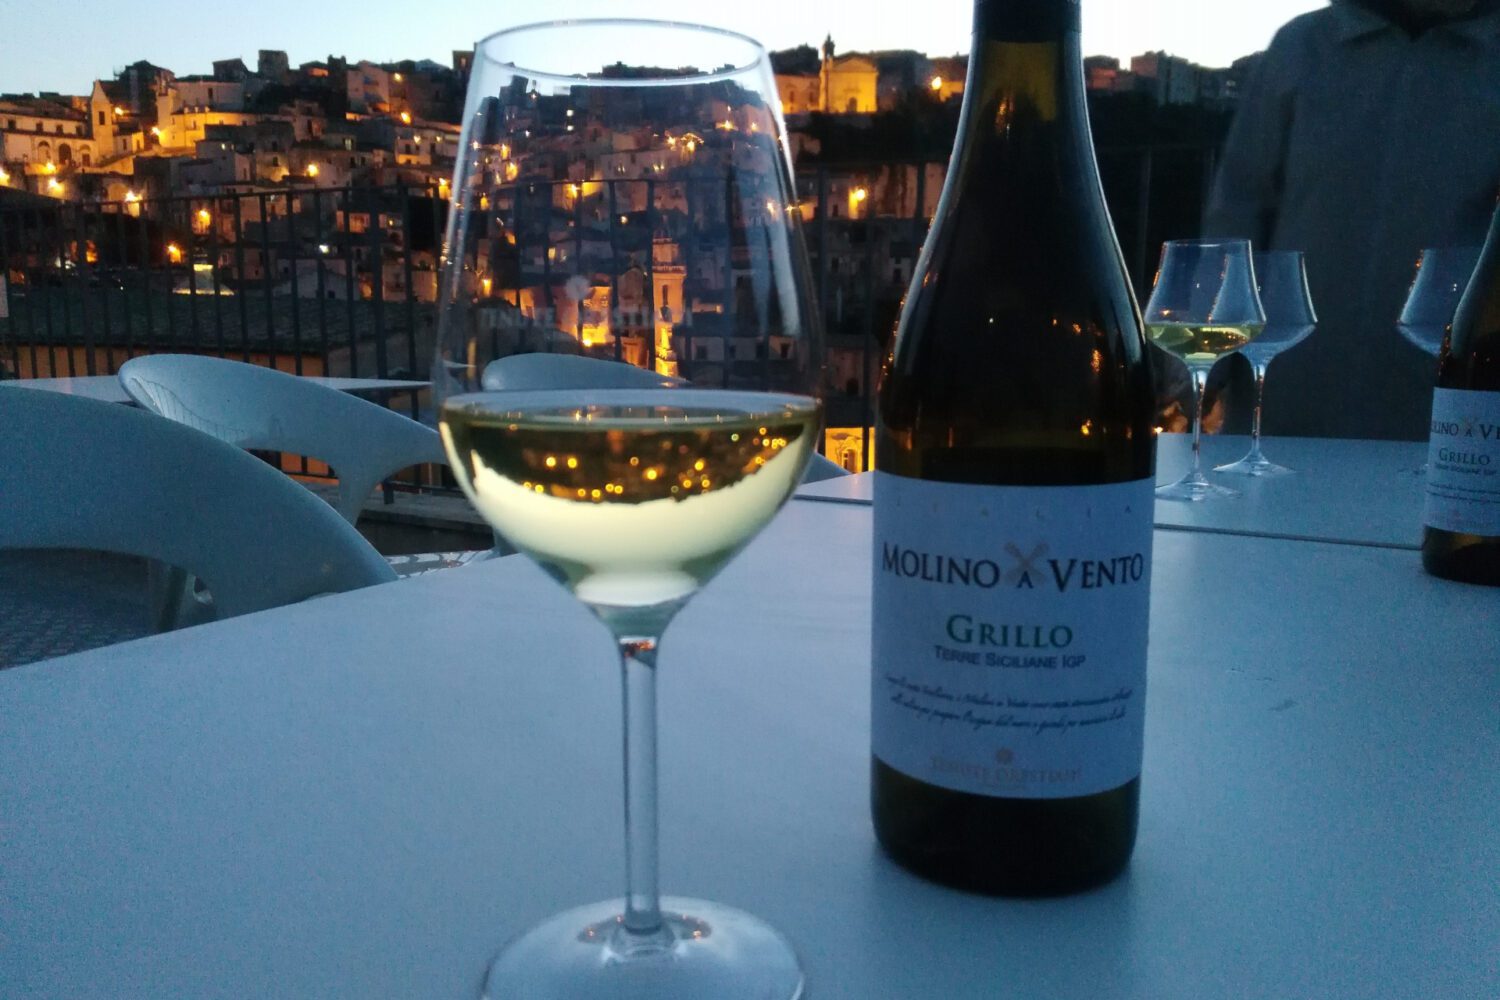 Wine as aperitivo in Sicily